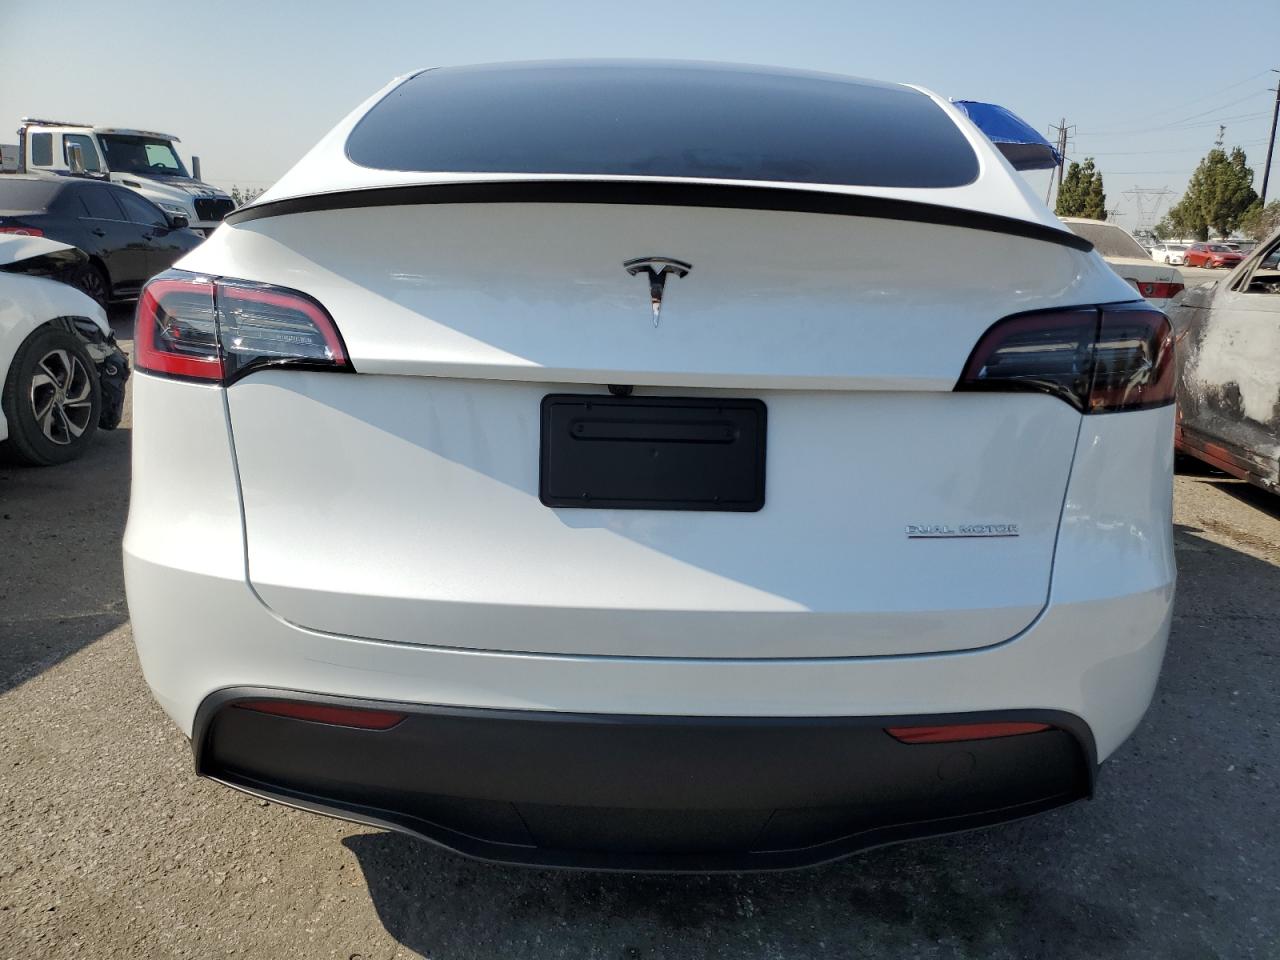 2024 Tesla Model Y VIN: 7SAYGDEF2RF117616 Lot: 64713244